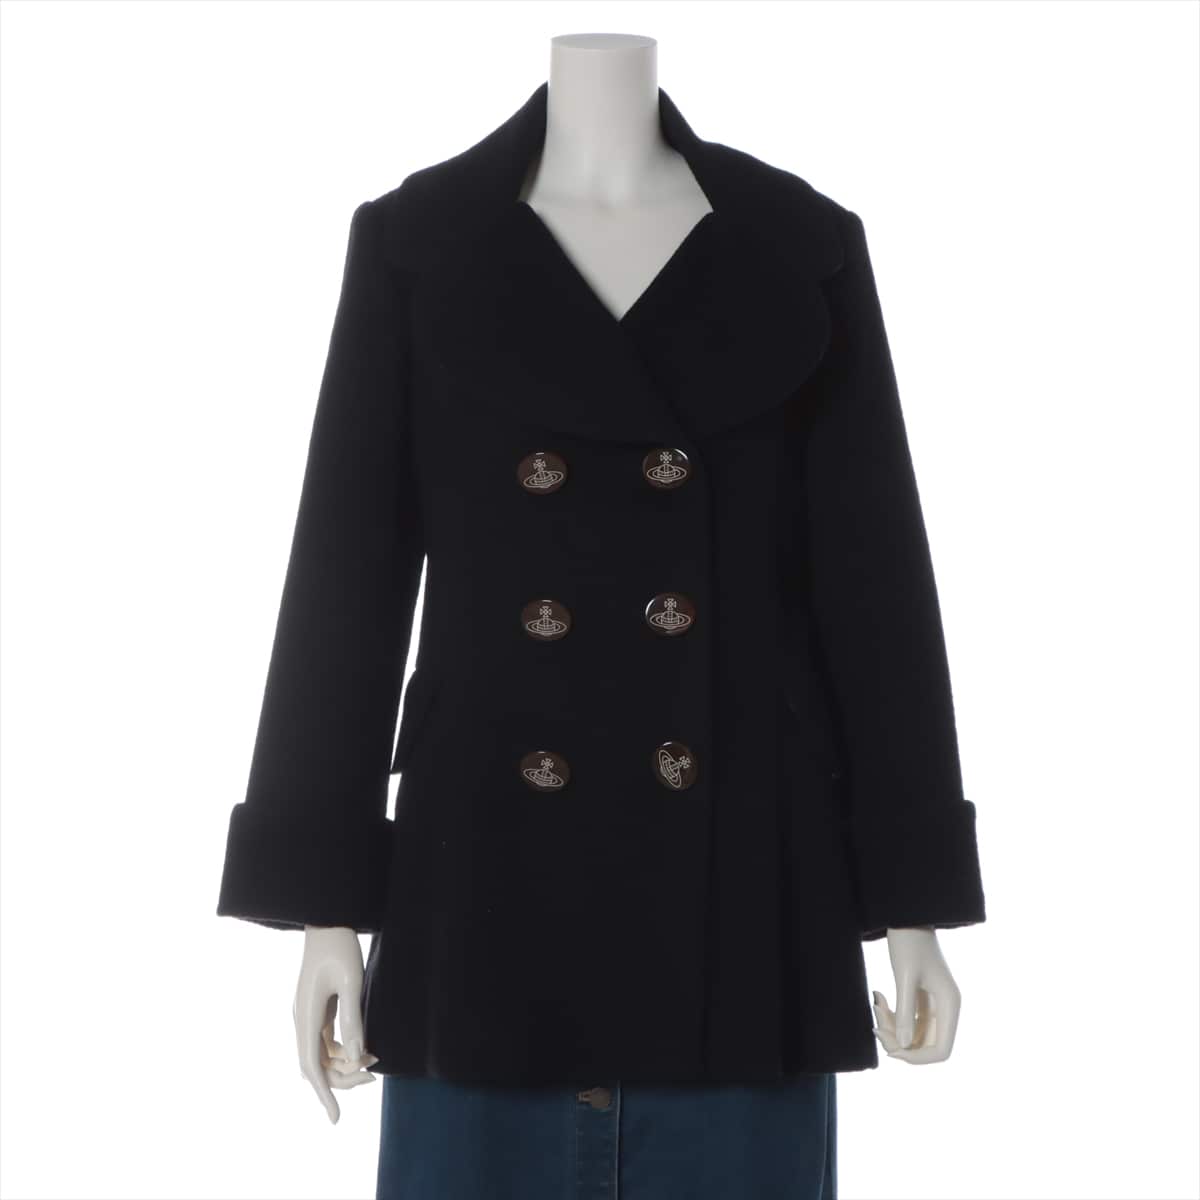 Vivienne Westwood RED LABEL Wool & Polyester Pea coat 1 Ladies' Black  16-03-642004 Love coat